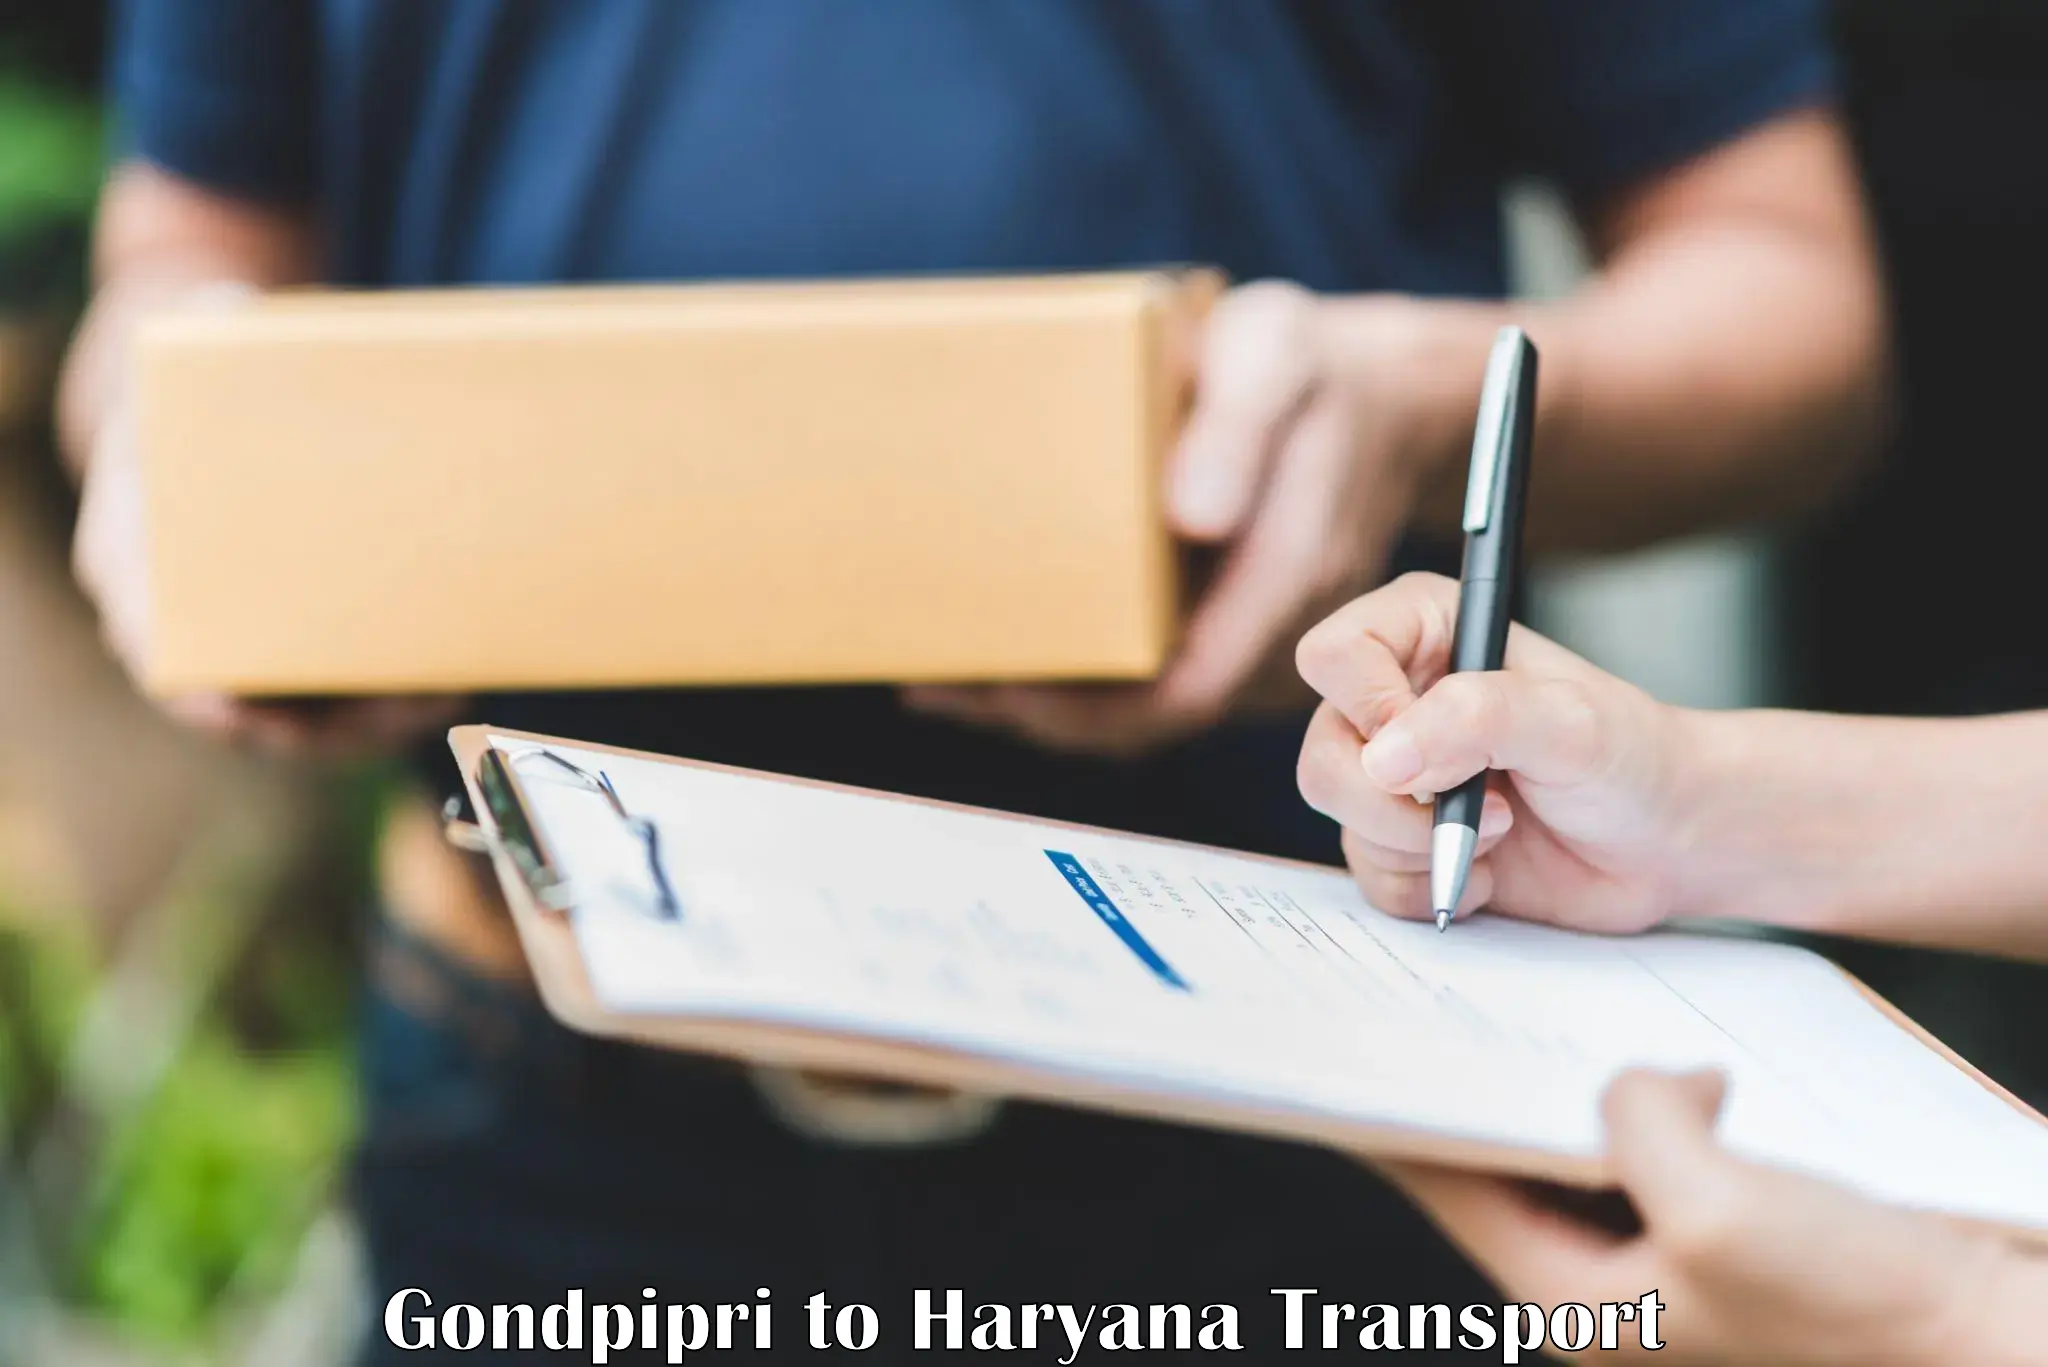 Parcel transport services Gondpipri to Hansi